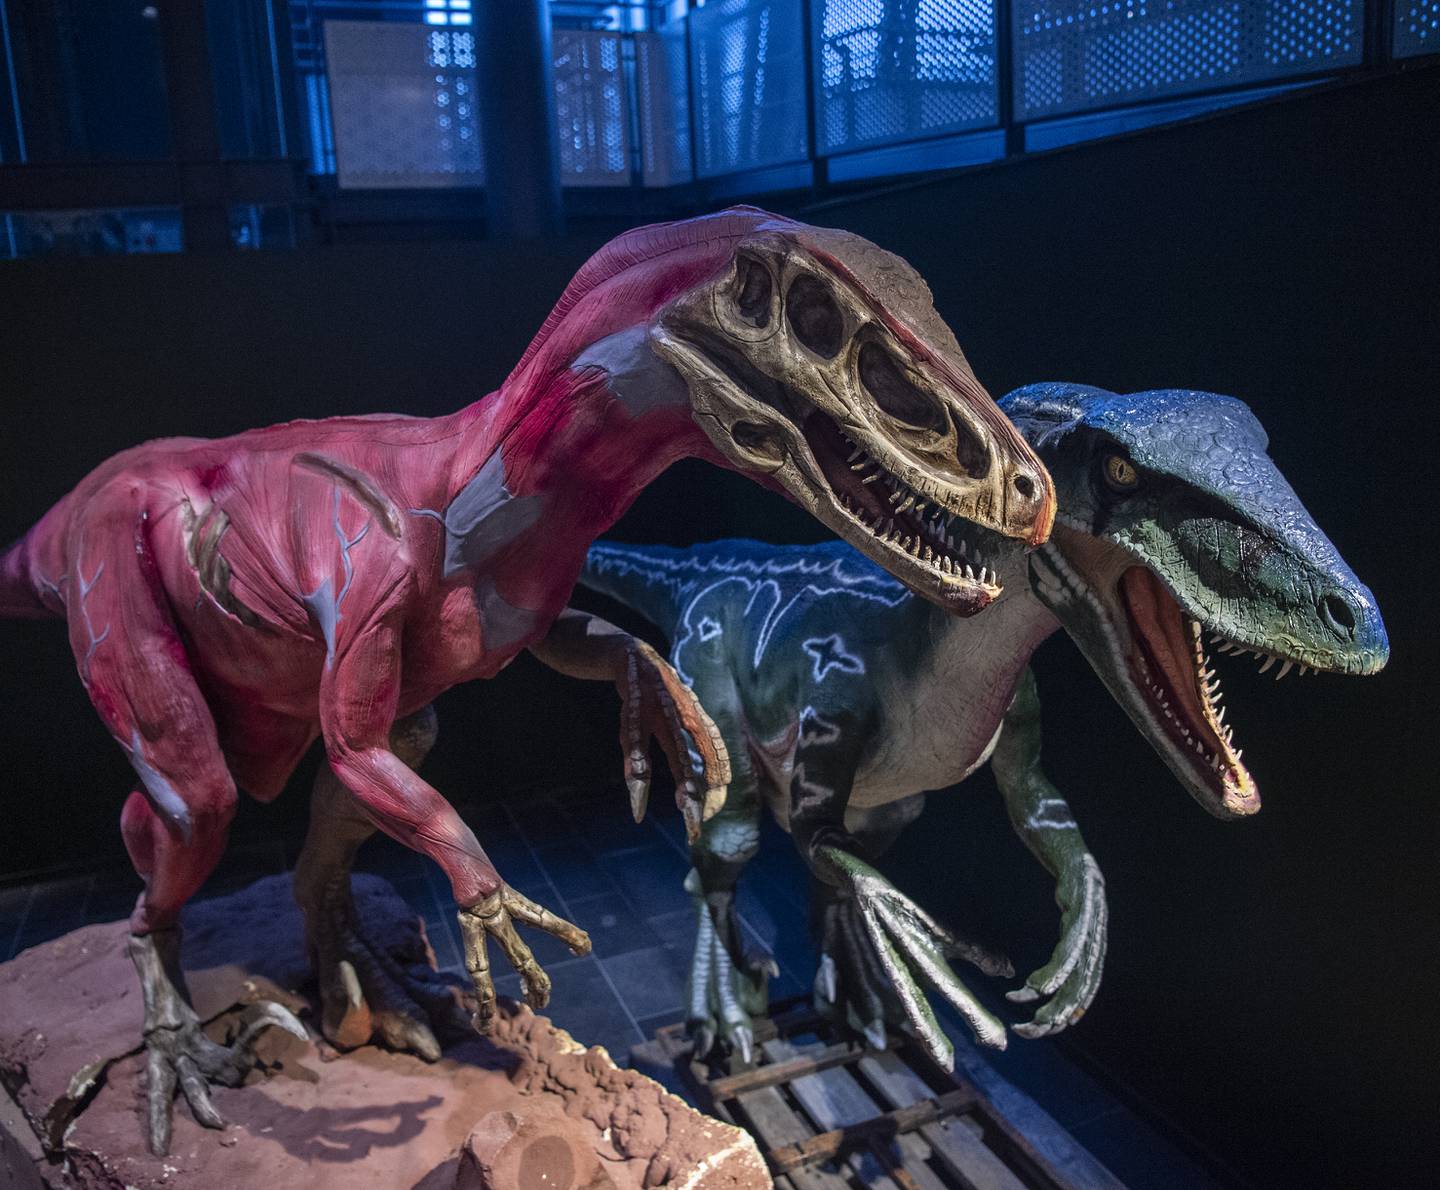 Du finner rundt 15 ulike dinosaurer i full størrelse i utstillingen på oljemuseet.